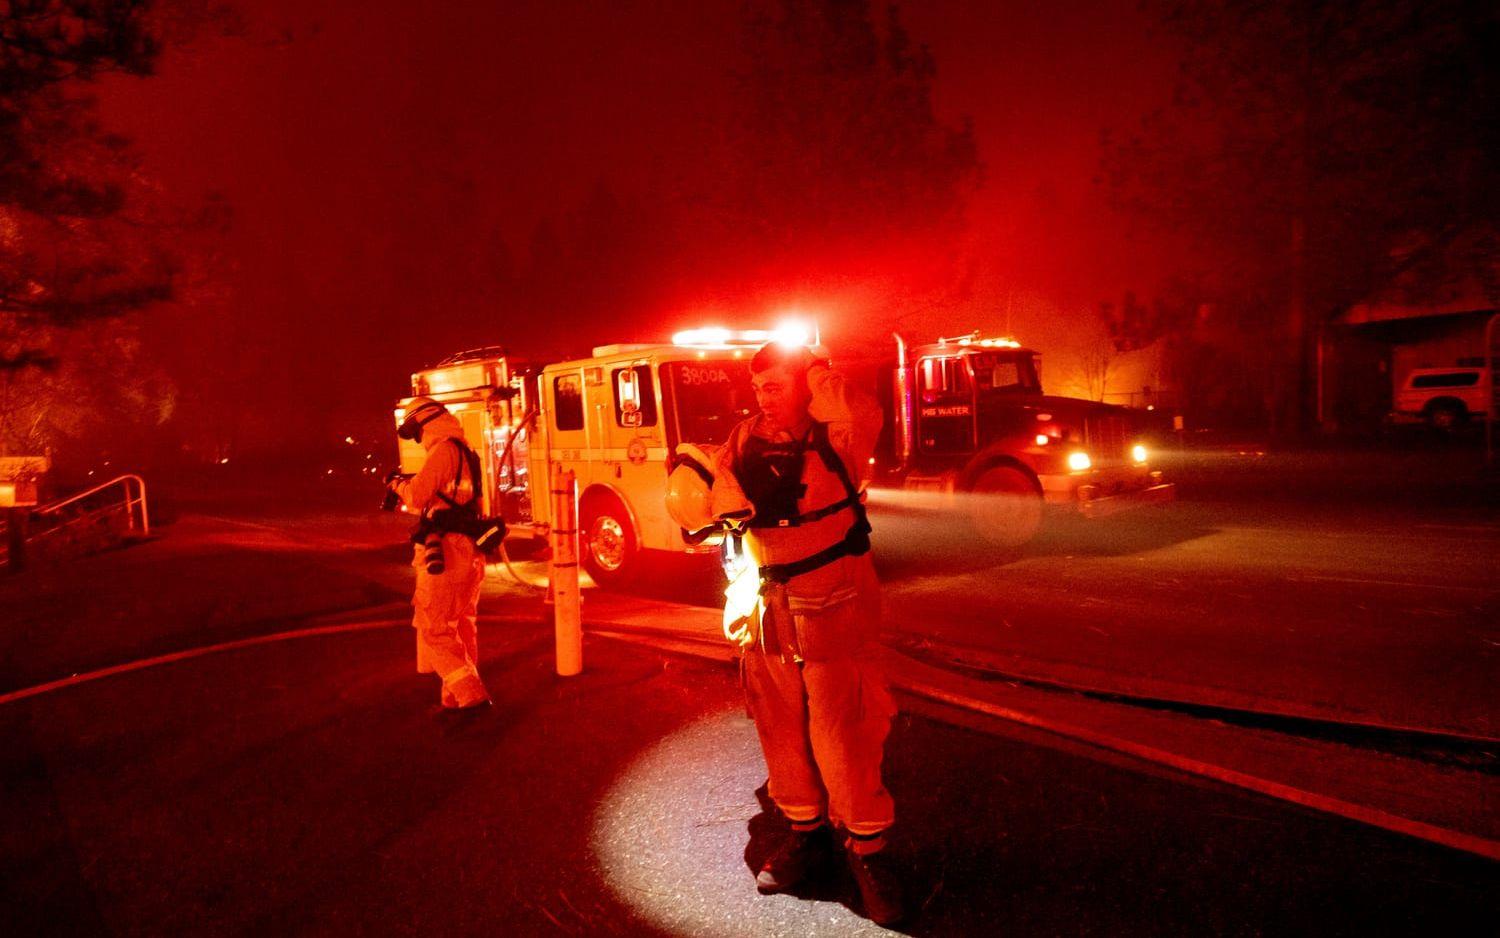 Brandmannen Adrien Mahnke tar en paus i bekämpandet av branden som drar genom staden Paradise i Kalifornien. 